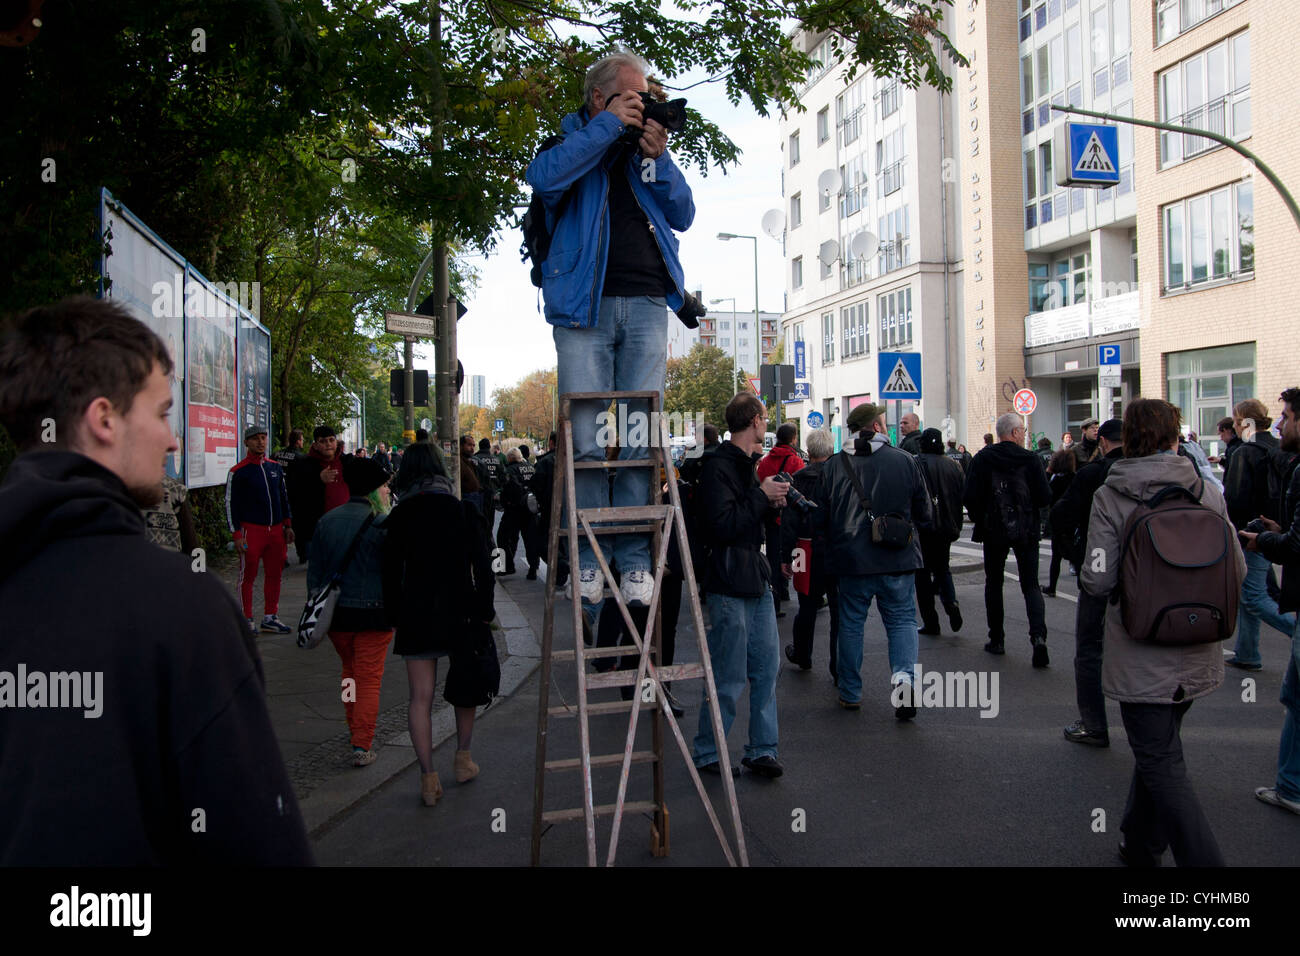 Sabato, 13 Ottobre 2012. Berlino, Germania. marcia di protesta dei rifugiati. I rifugiati protestano contro le deportazioni e gli obblighi residenziali. Fotografo su una scala. Foto Stock